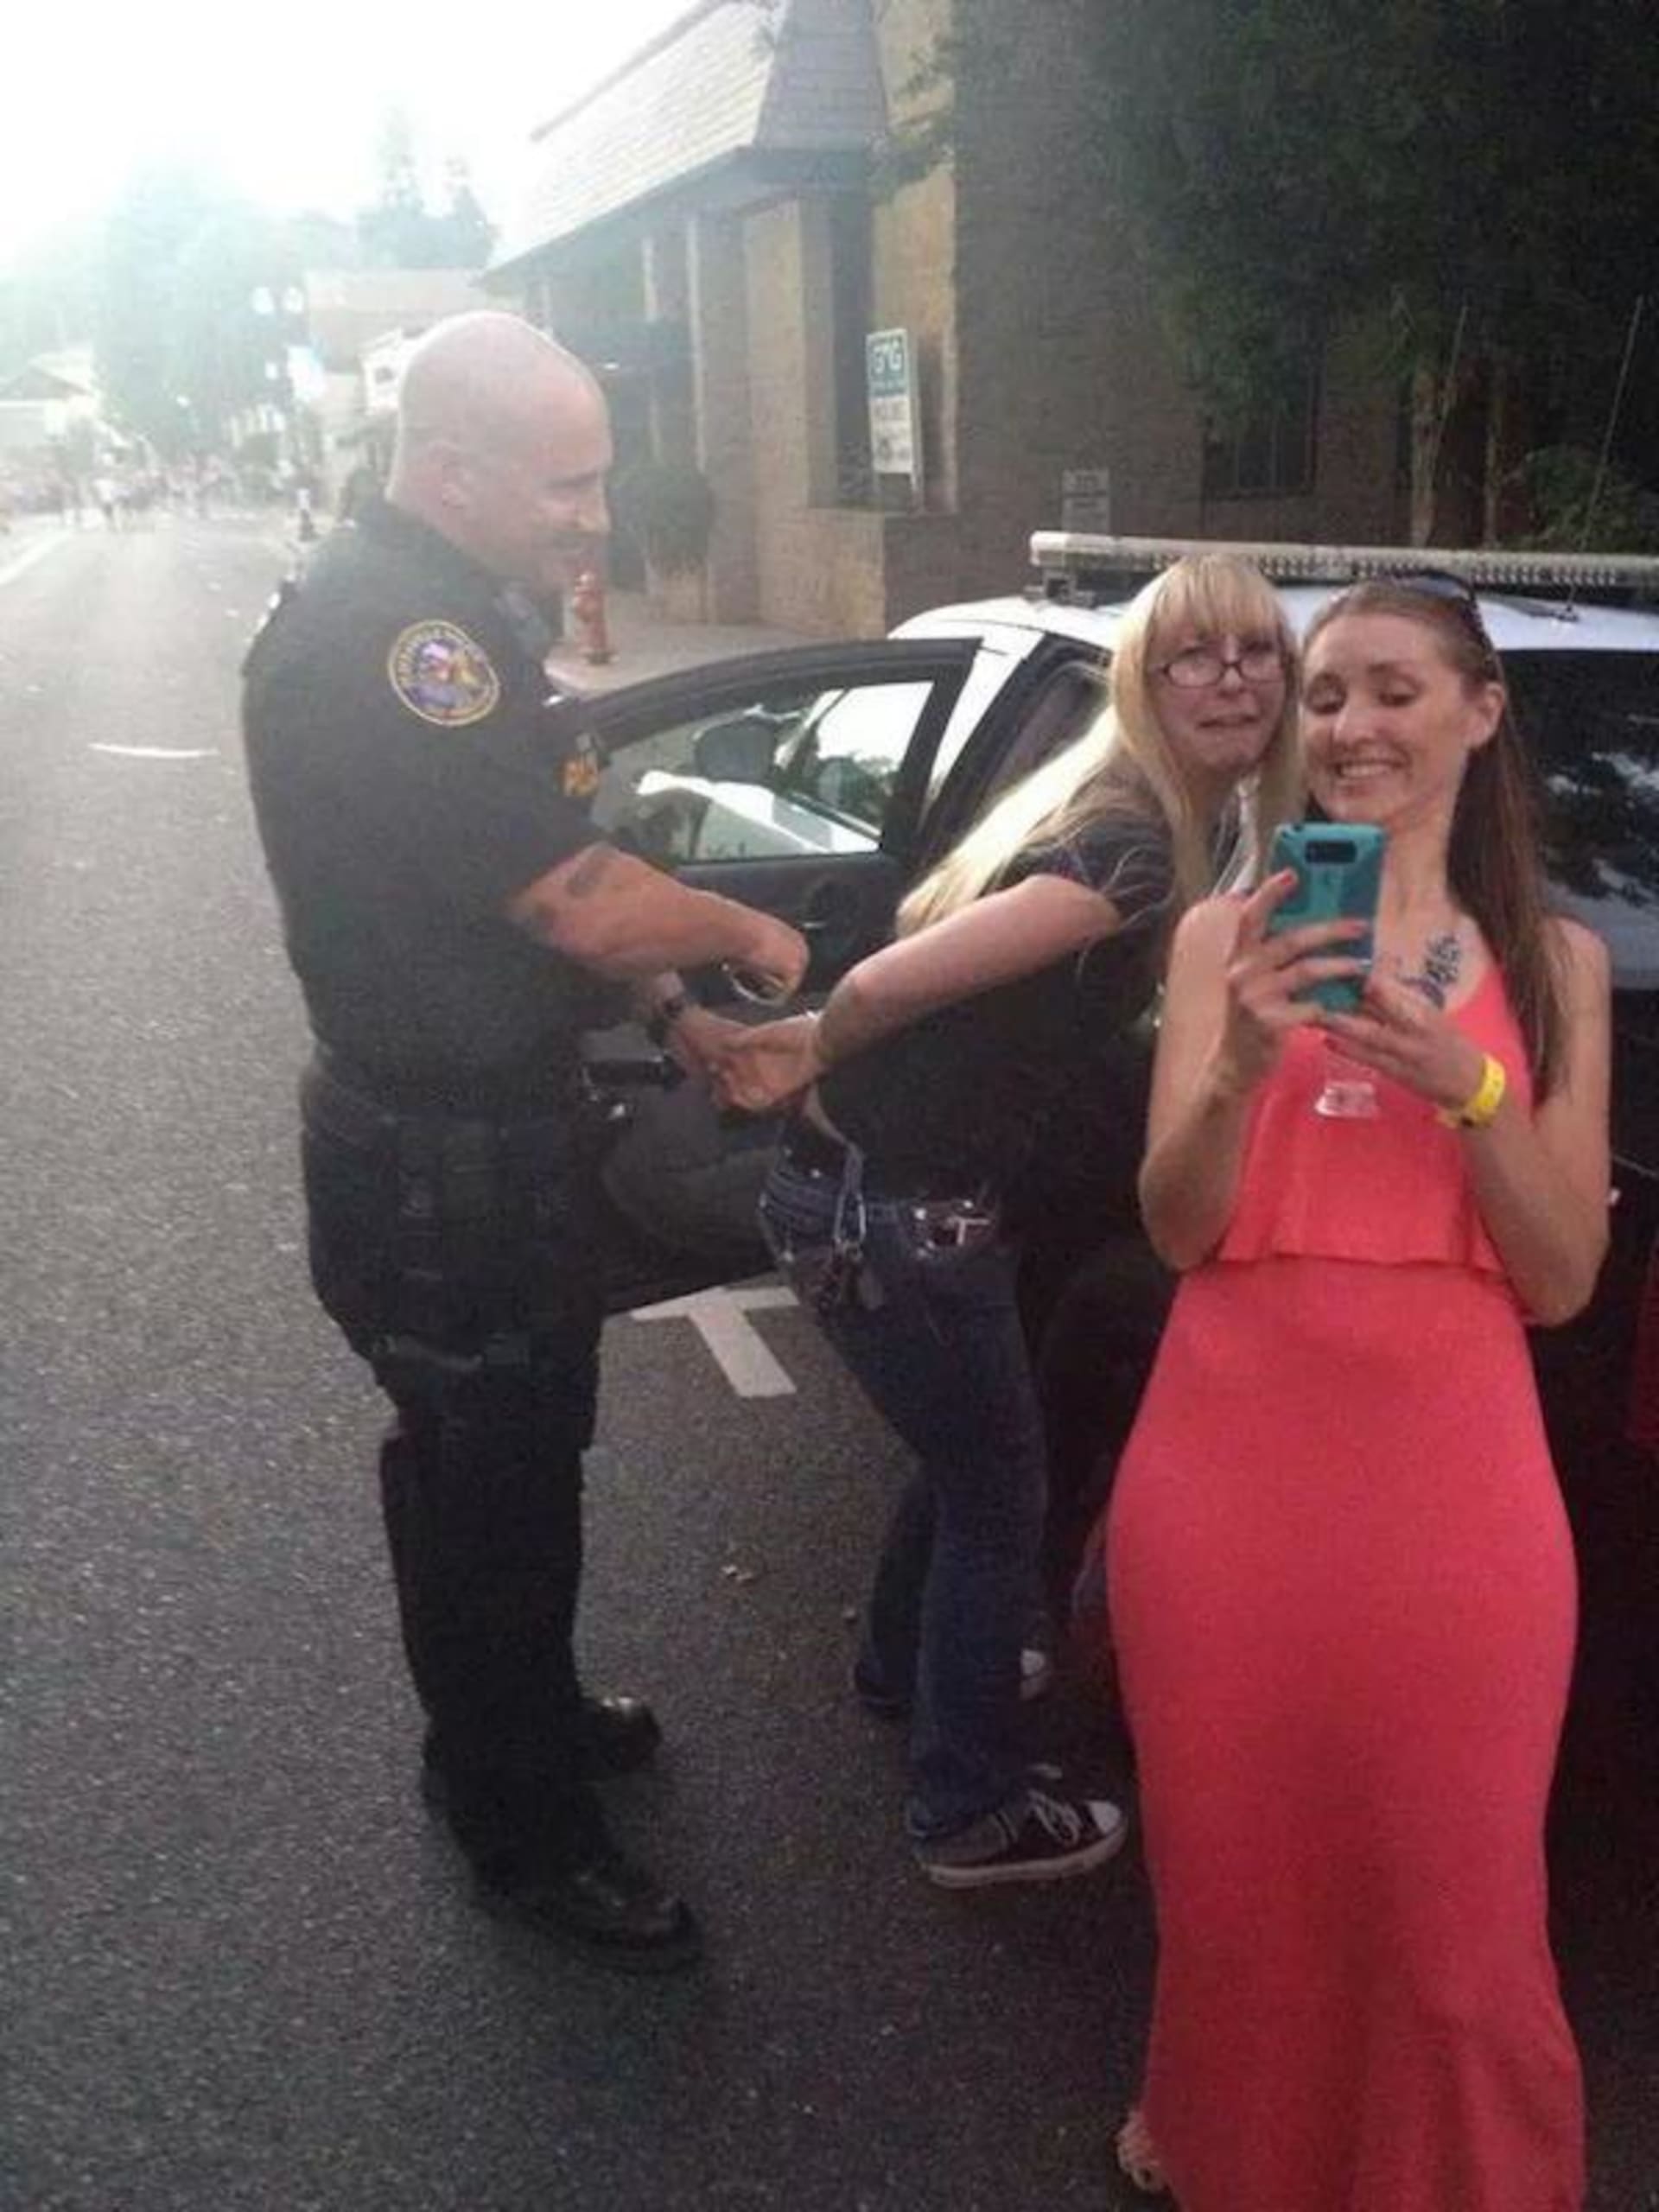 Selfíčko ze zatýkání? Není problémm